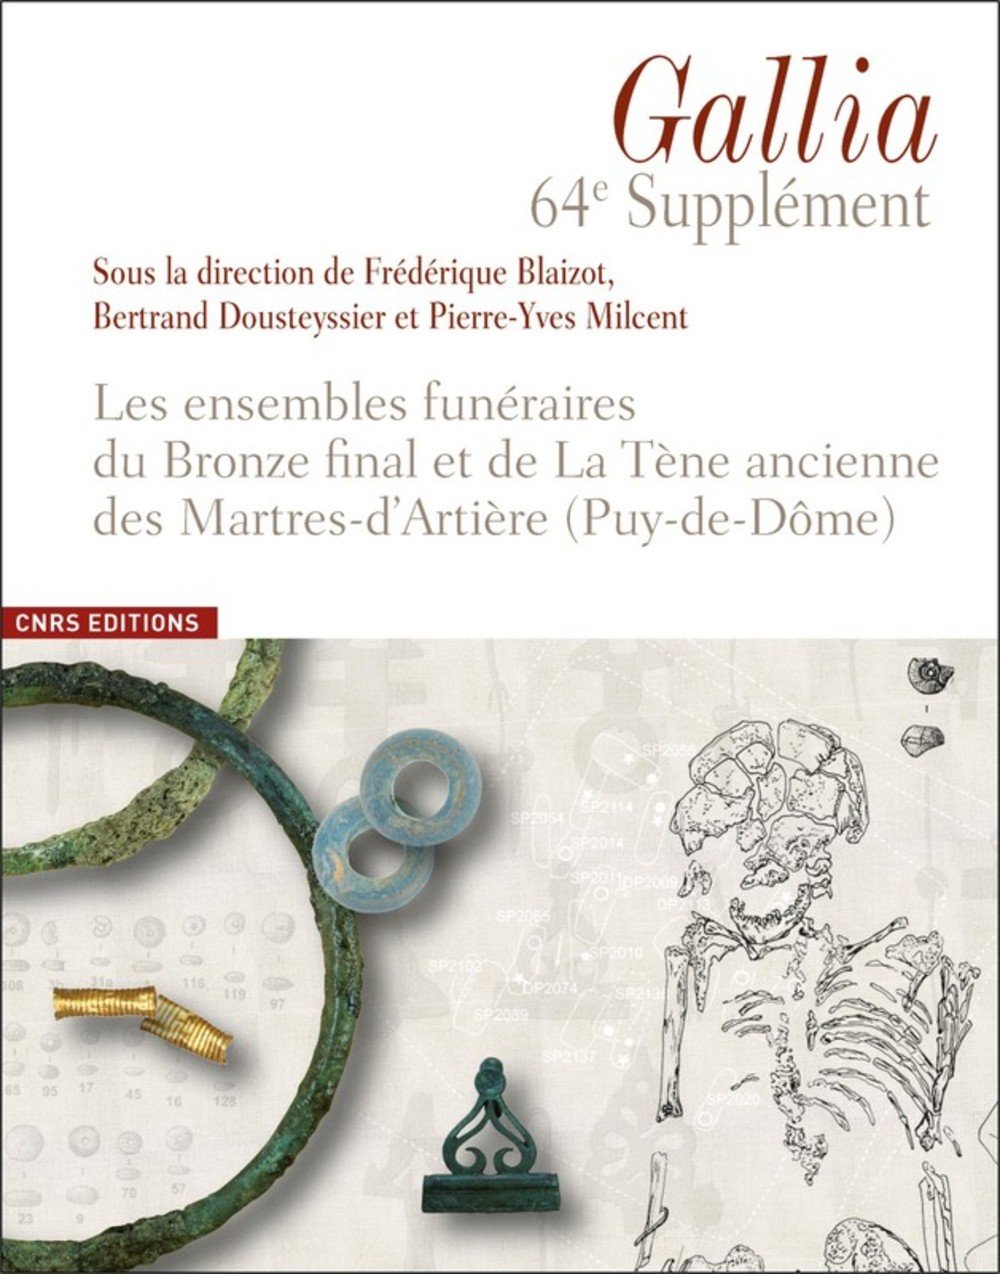 Les ensembles funéraires du Bronze final et de La Tène ancienne des Martres-d'Artière (Puy-de-Dôme), (64e suppl. Gallia), 2017, 176 p.